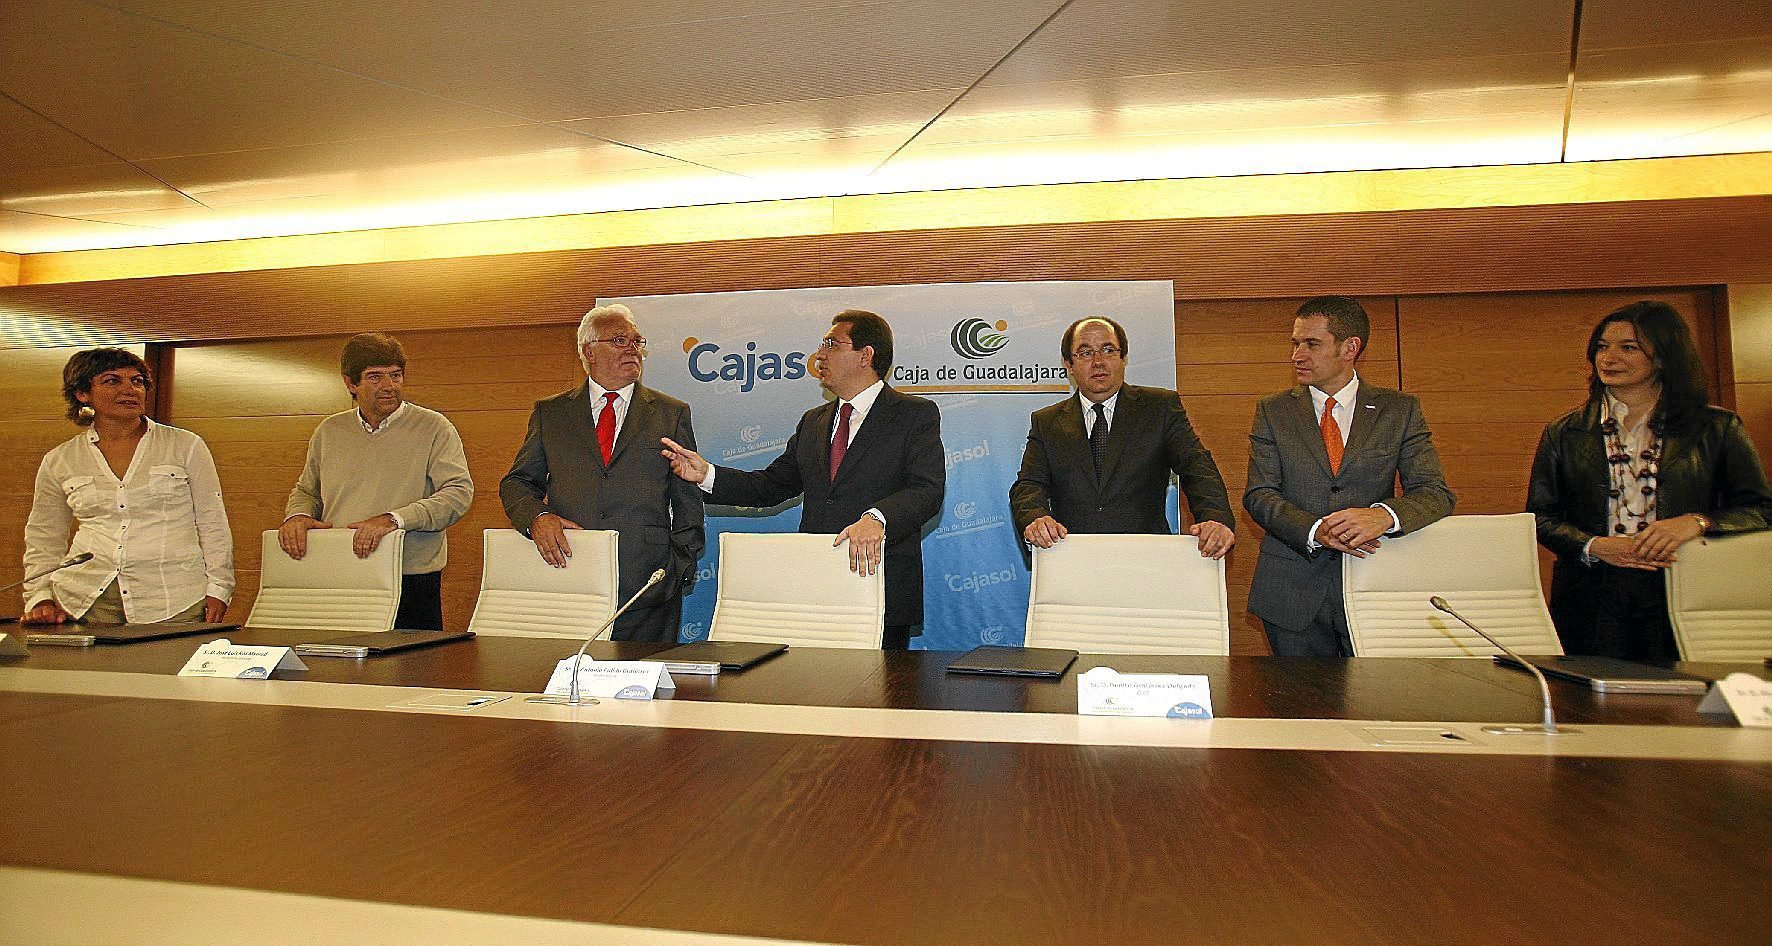 Los entonces presidentes de Caja Guadalajara, Jos Luis Ros, y Cajasol, Antonio Pulido, en el acto de firma de la fusin de ambas entidades.